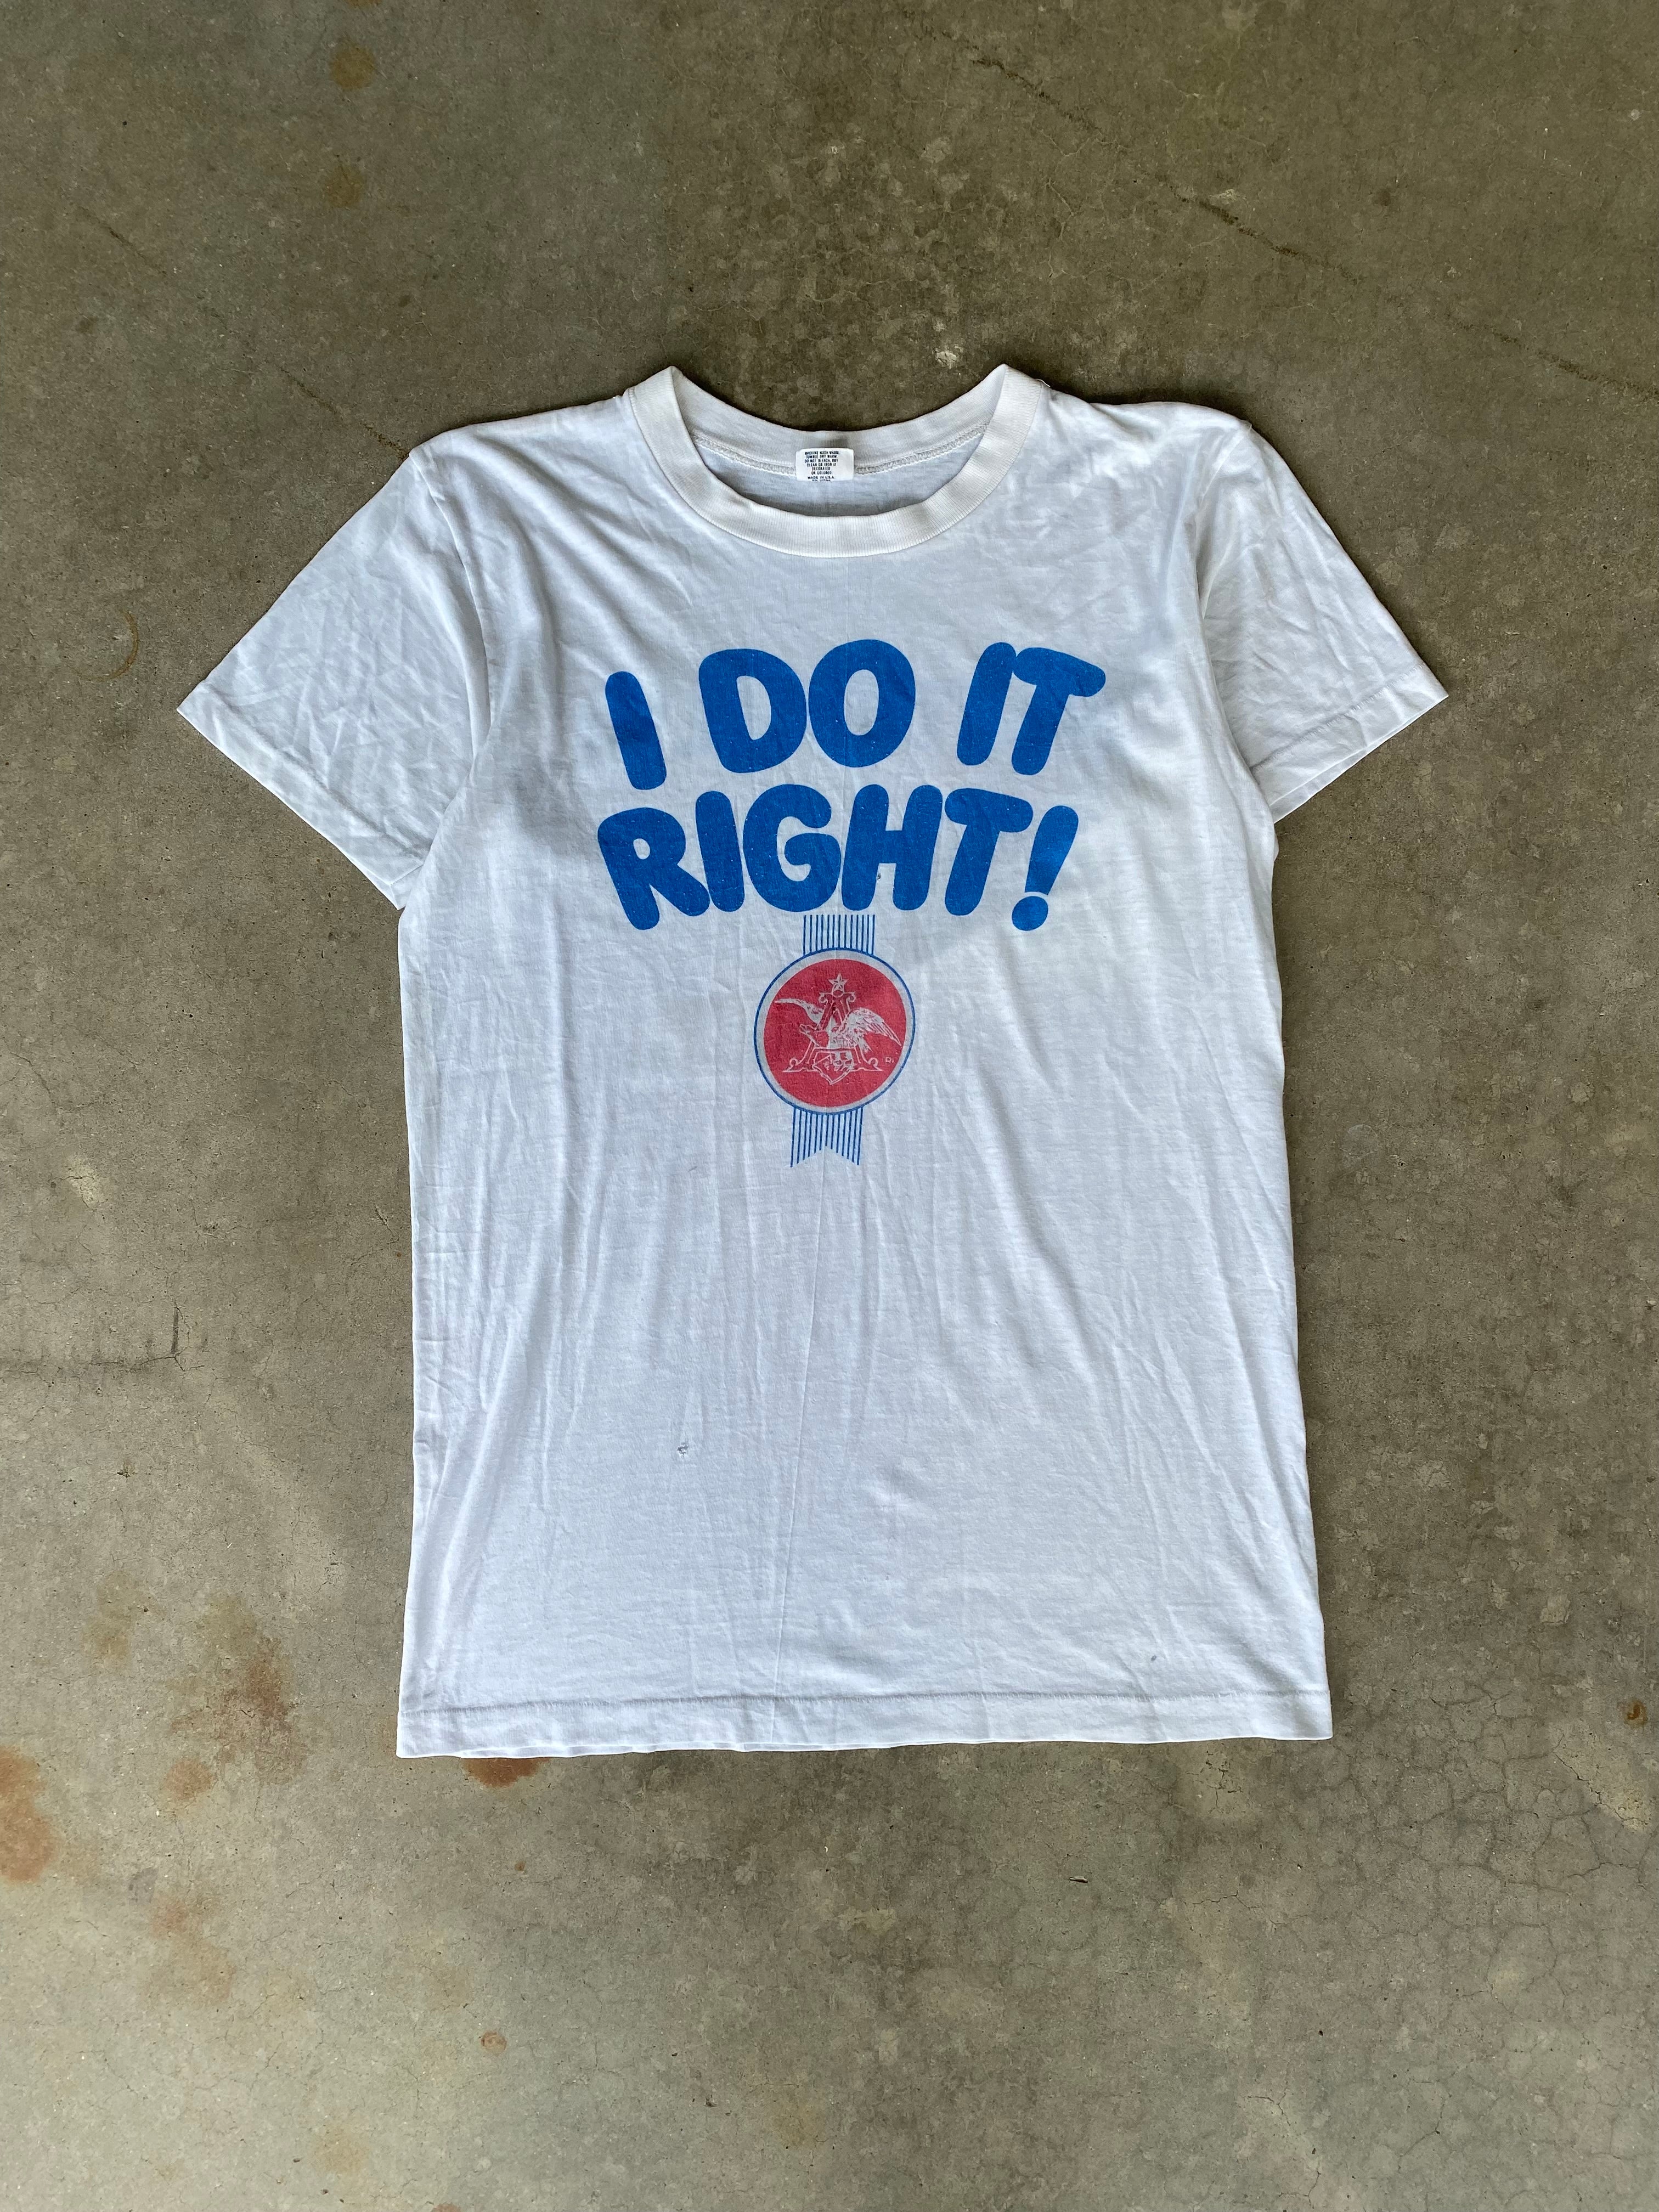 1980S "I DO IT RIGHT!" Anheuser-Busch T-Shirt (M)